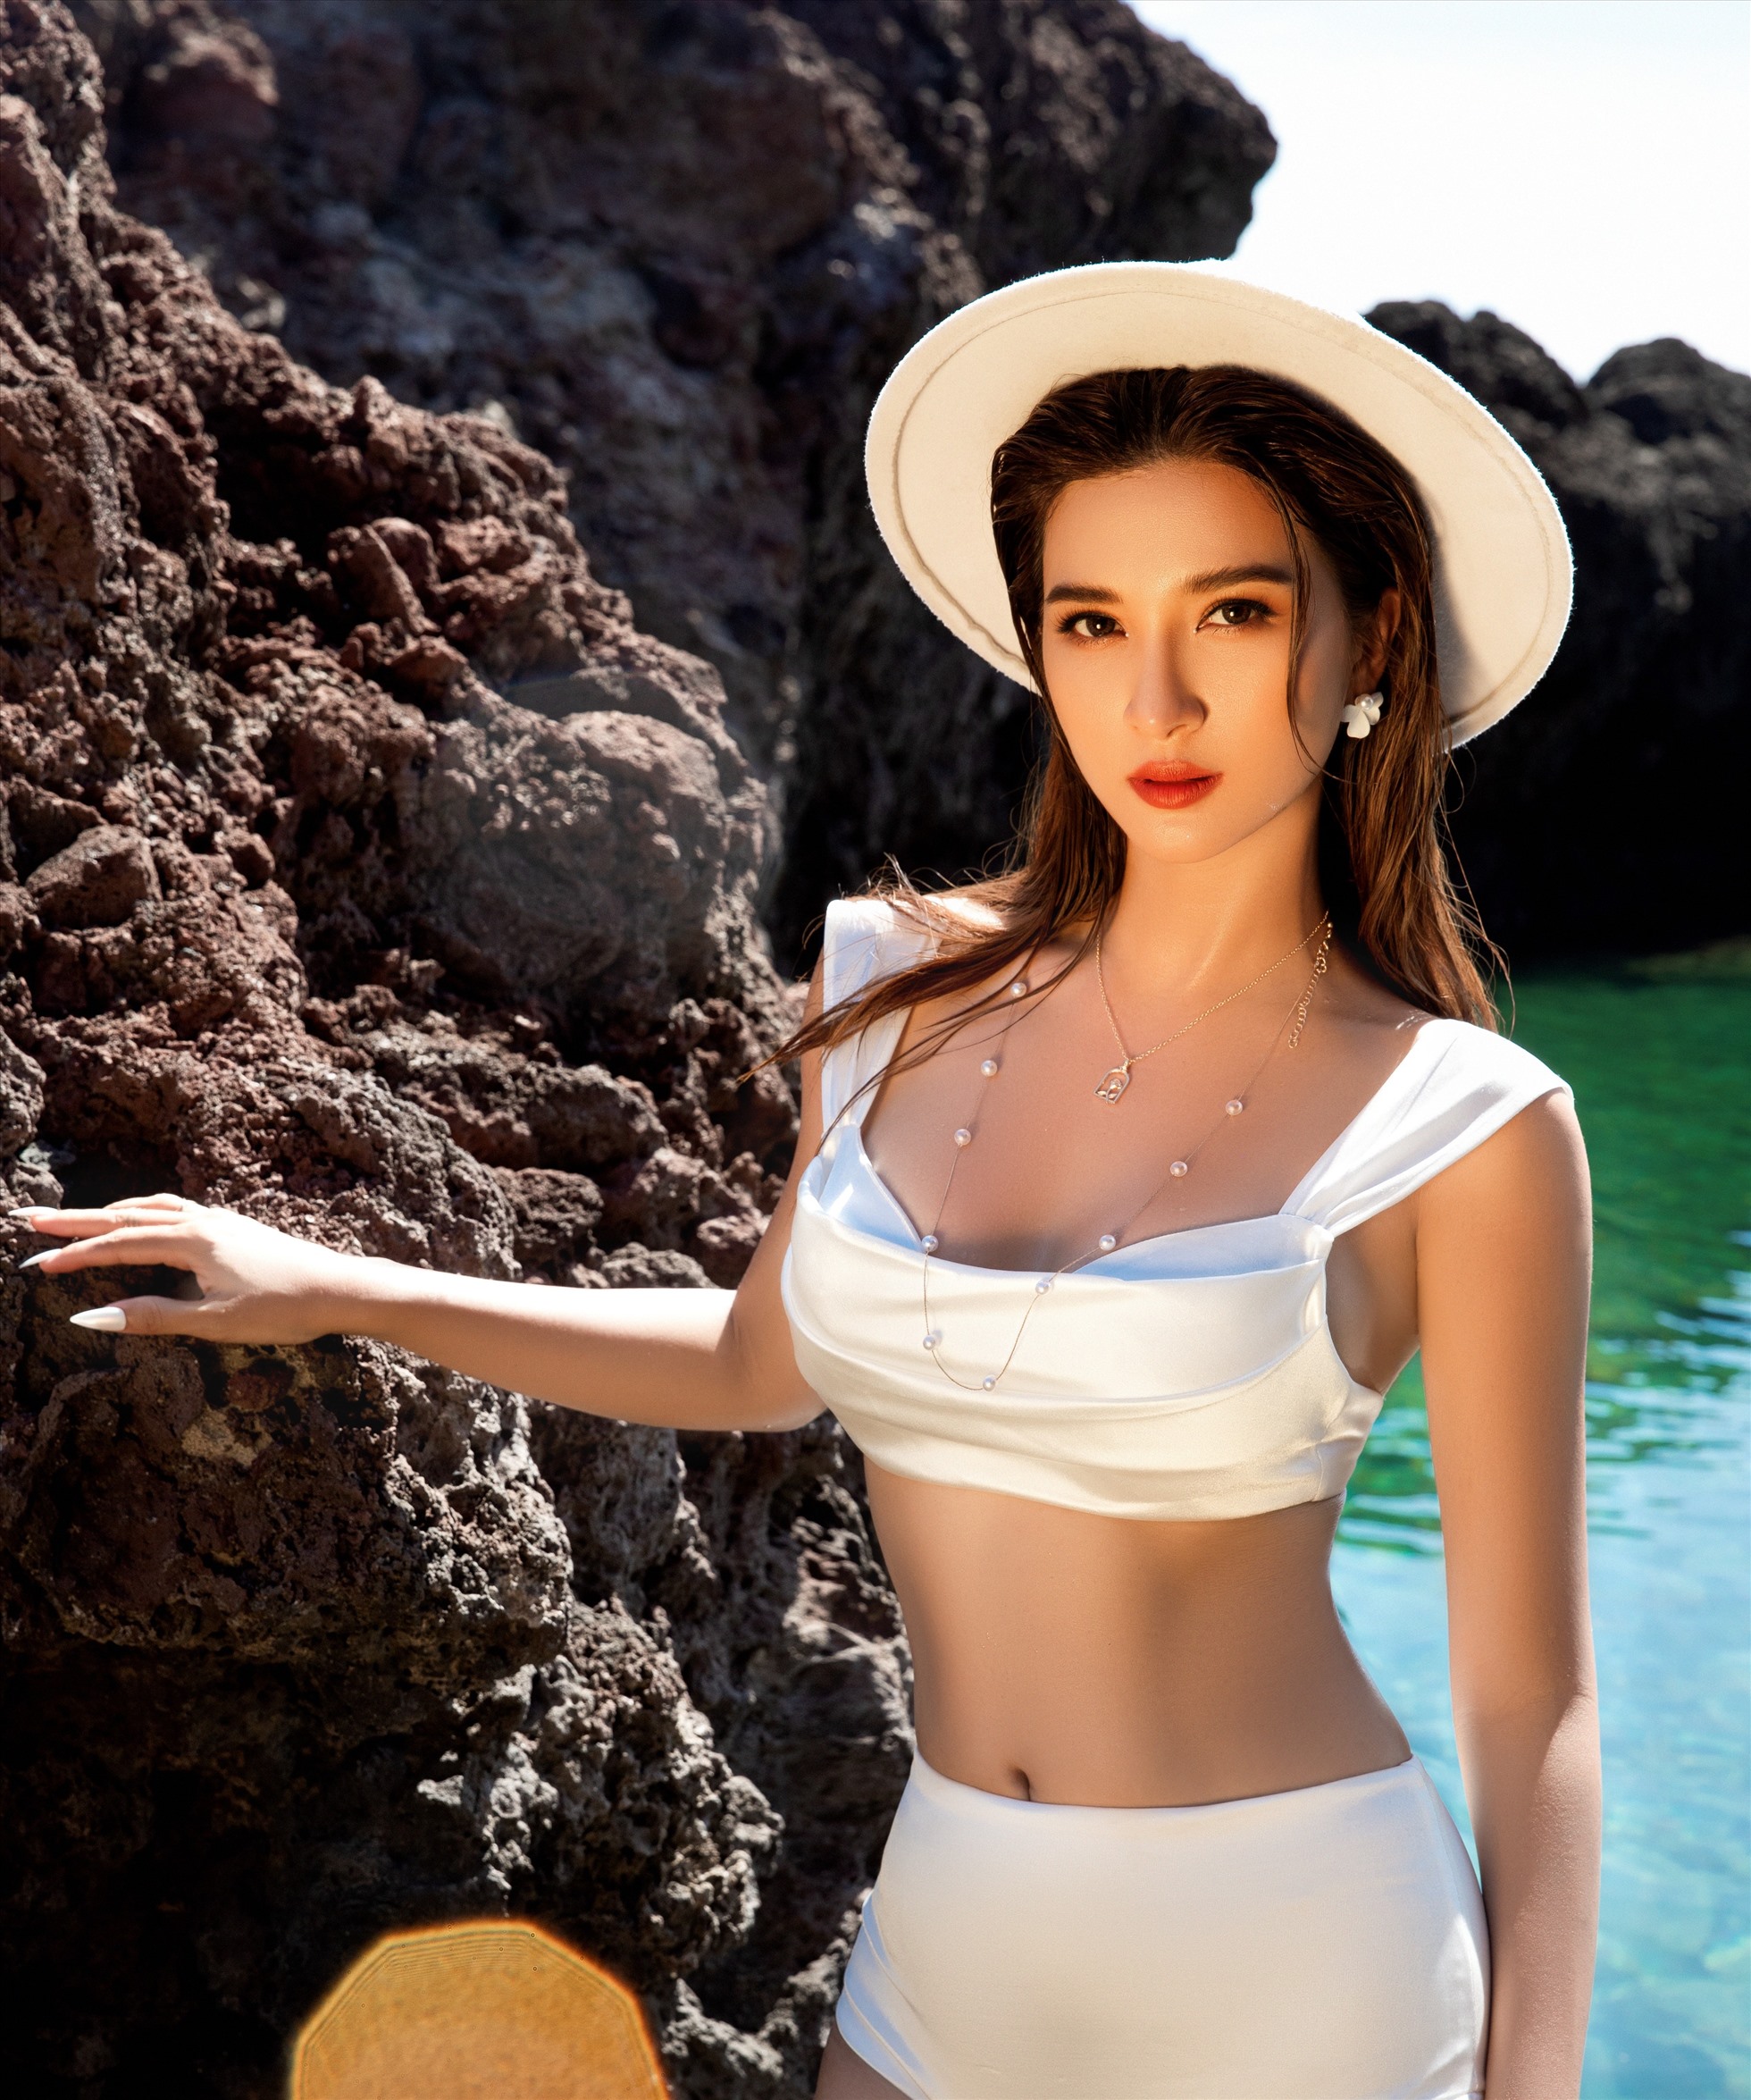 Sau chuyến công tác tại đảo Phú Quí, nữ diễn viên phim “Mộng Phù Hoa” thực hiện bộ hình khoe dáng trên bờ biển. Vóc dáng trẻ trung gợi cảm của Kim Tuyến ở tuổi 36 khiến nhiều người ngưỡng mộ.